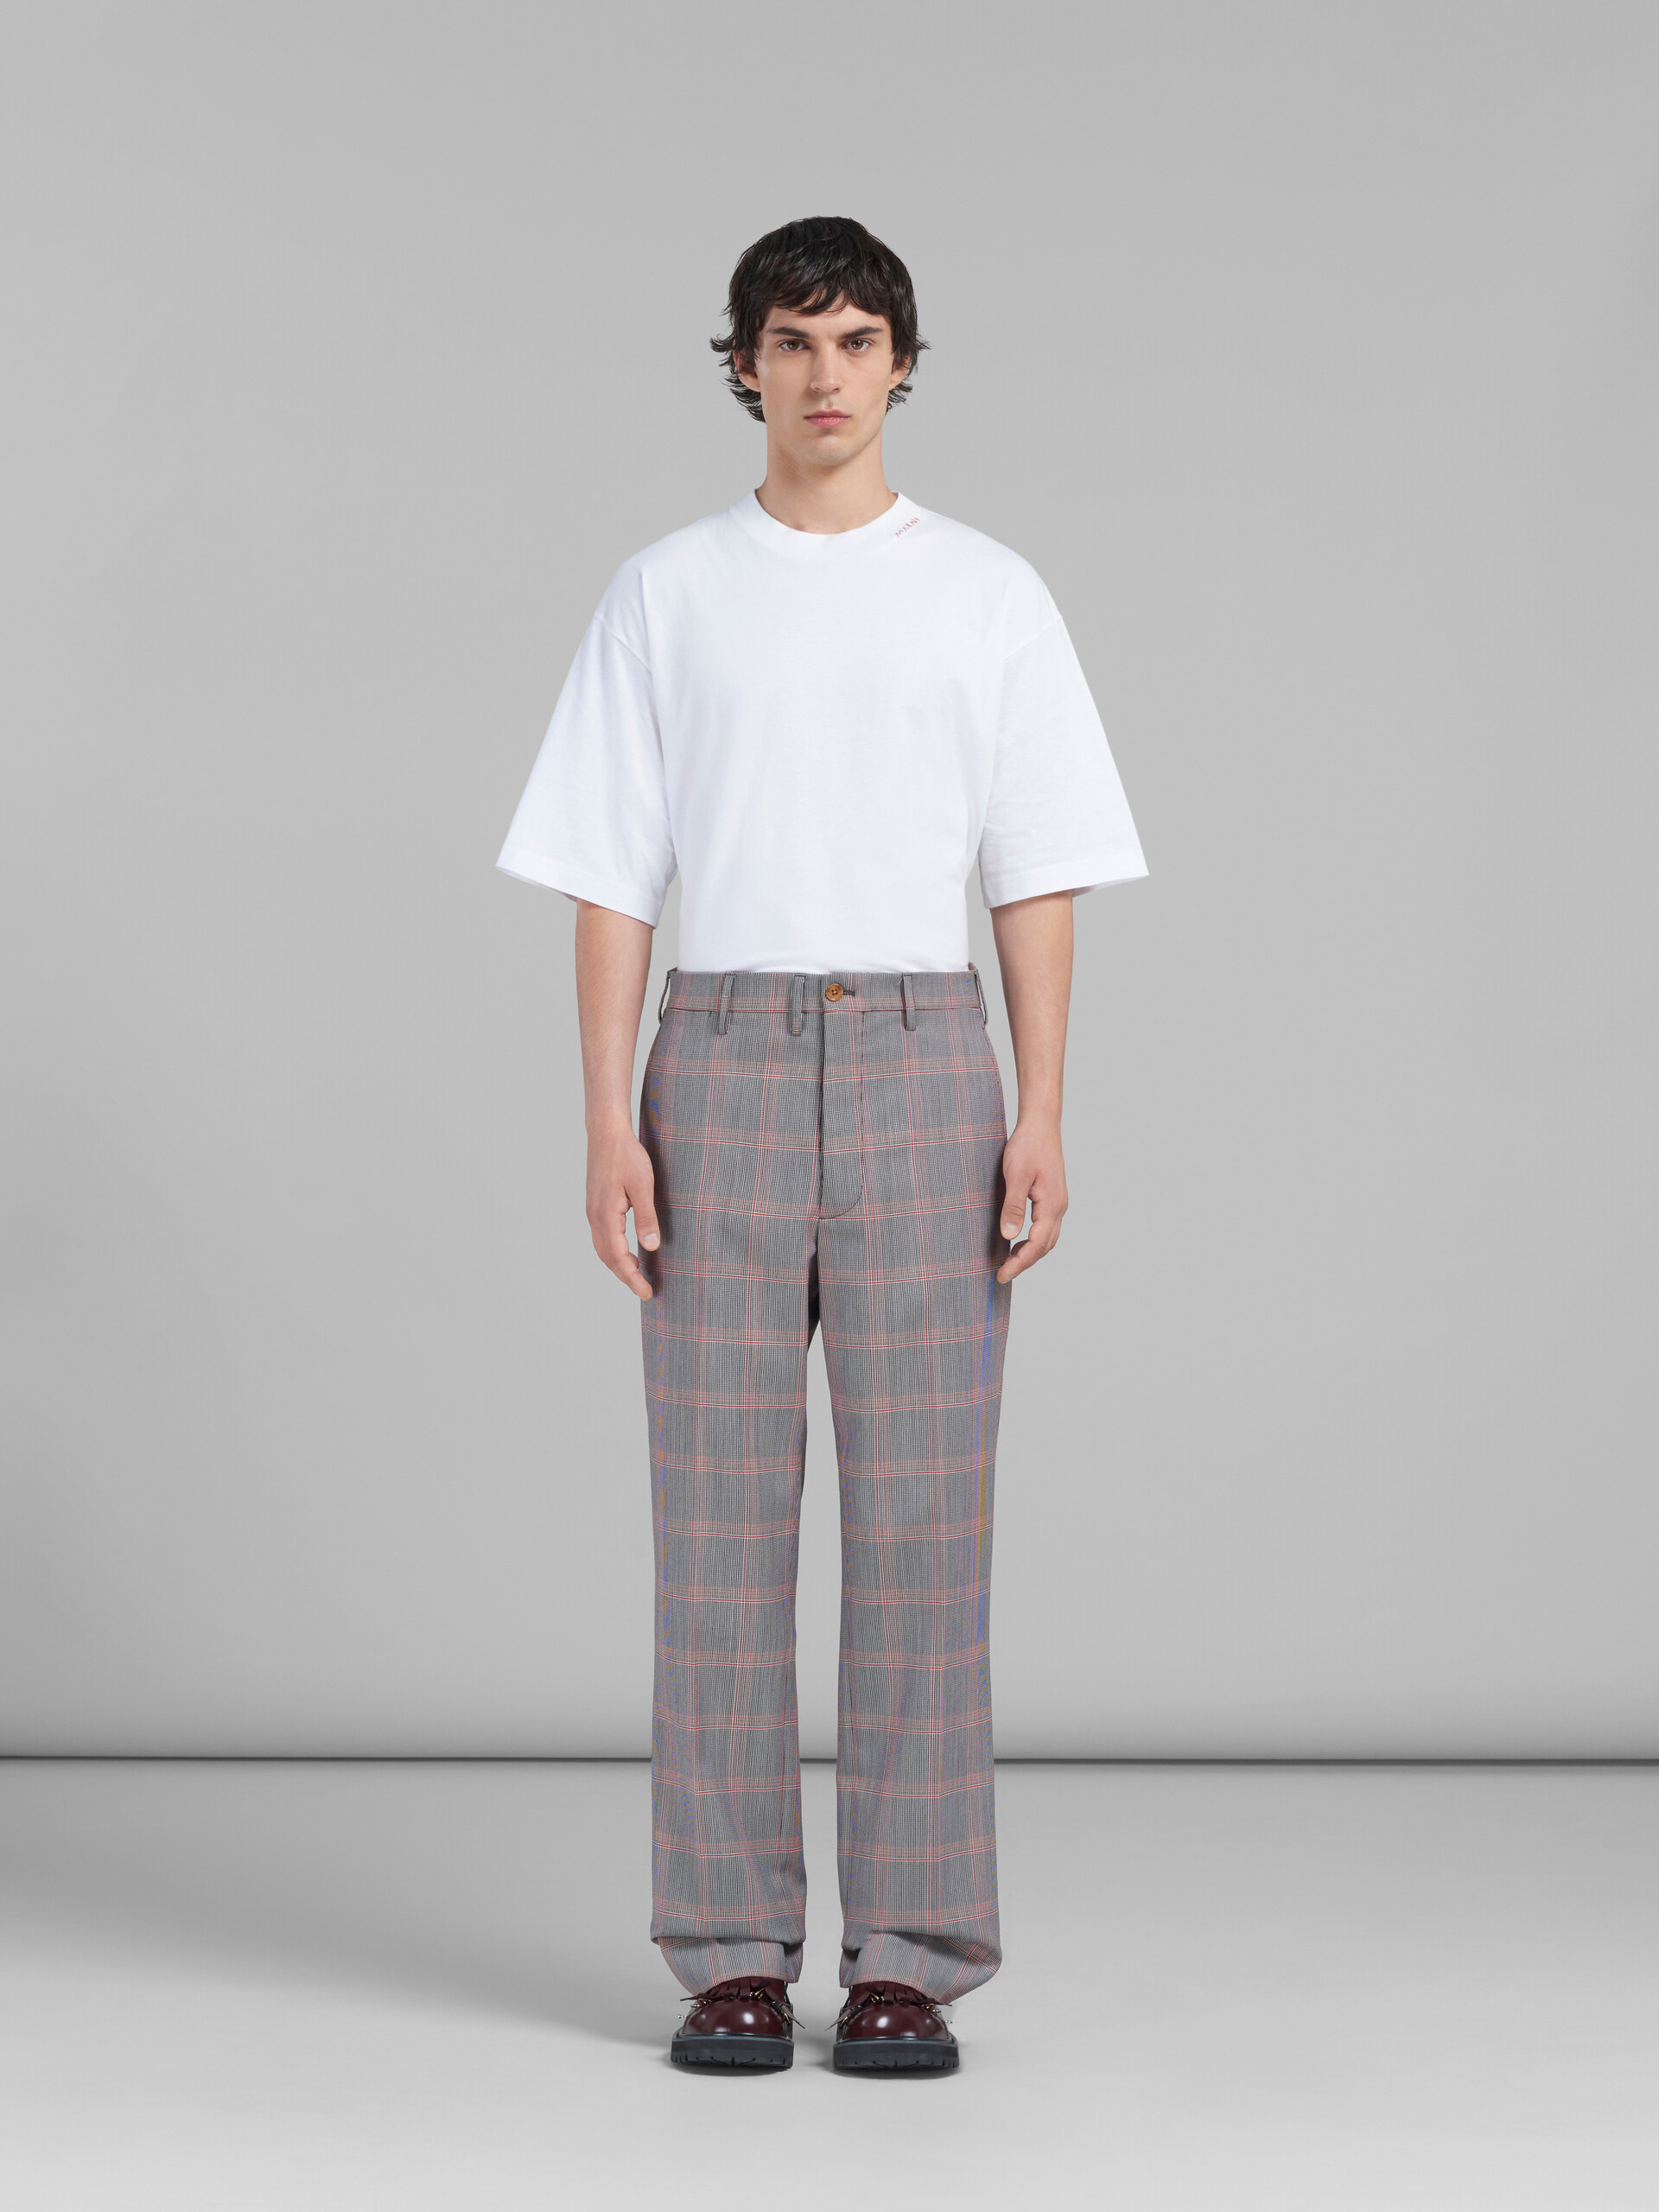 Pantaloni chino in lana tecnica con motivo check arancione - Pantaloni - Image 2